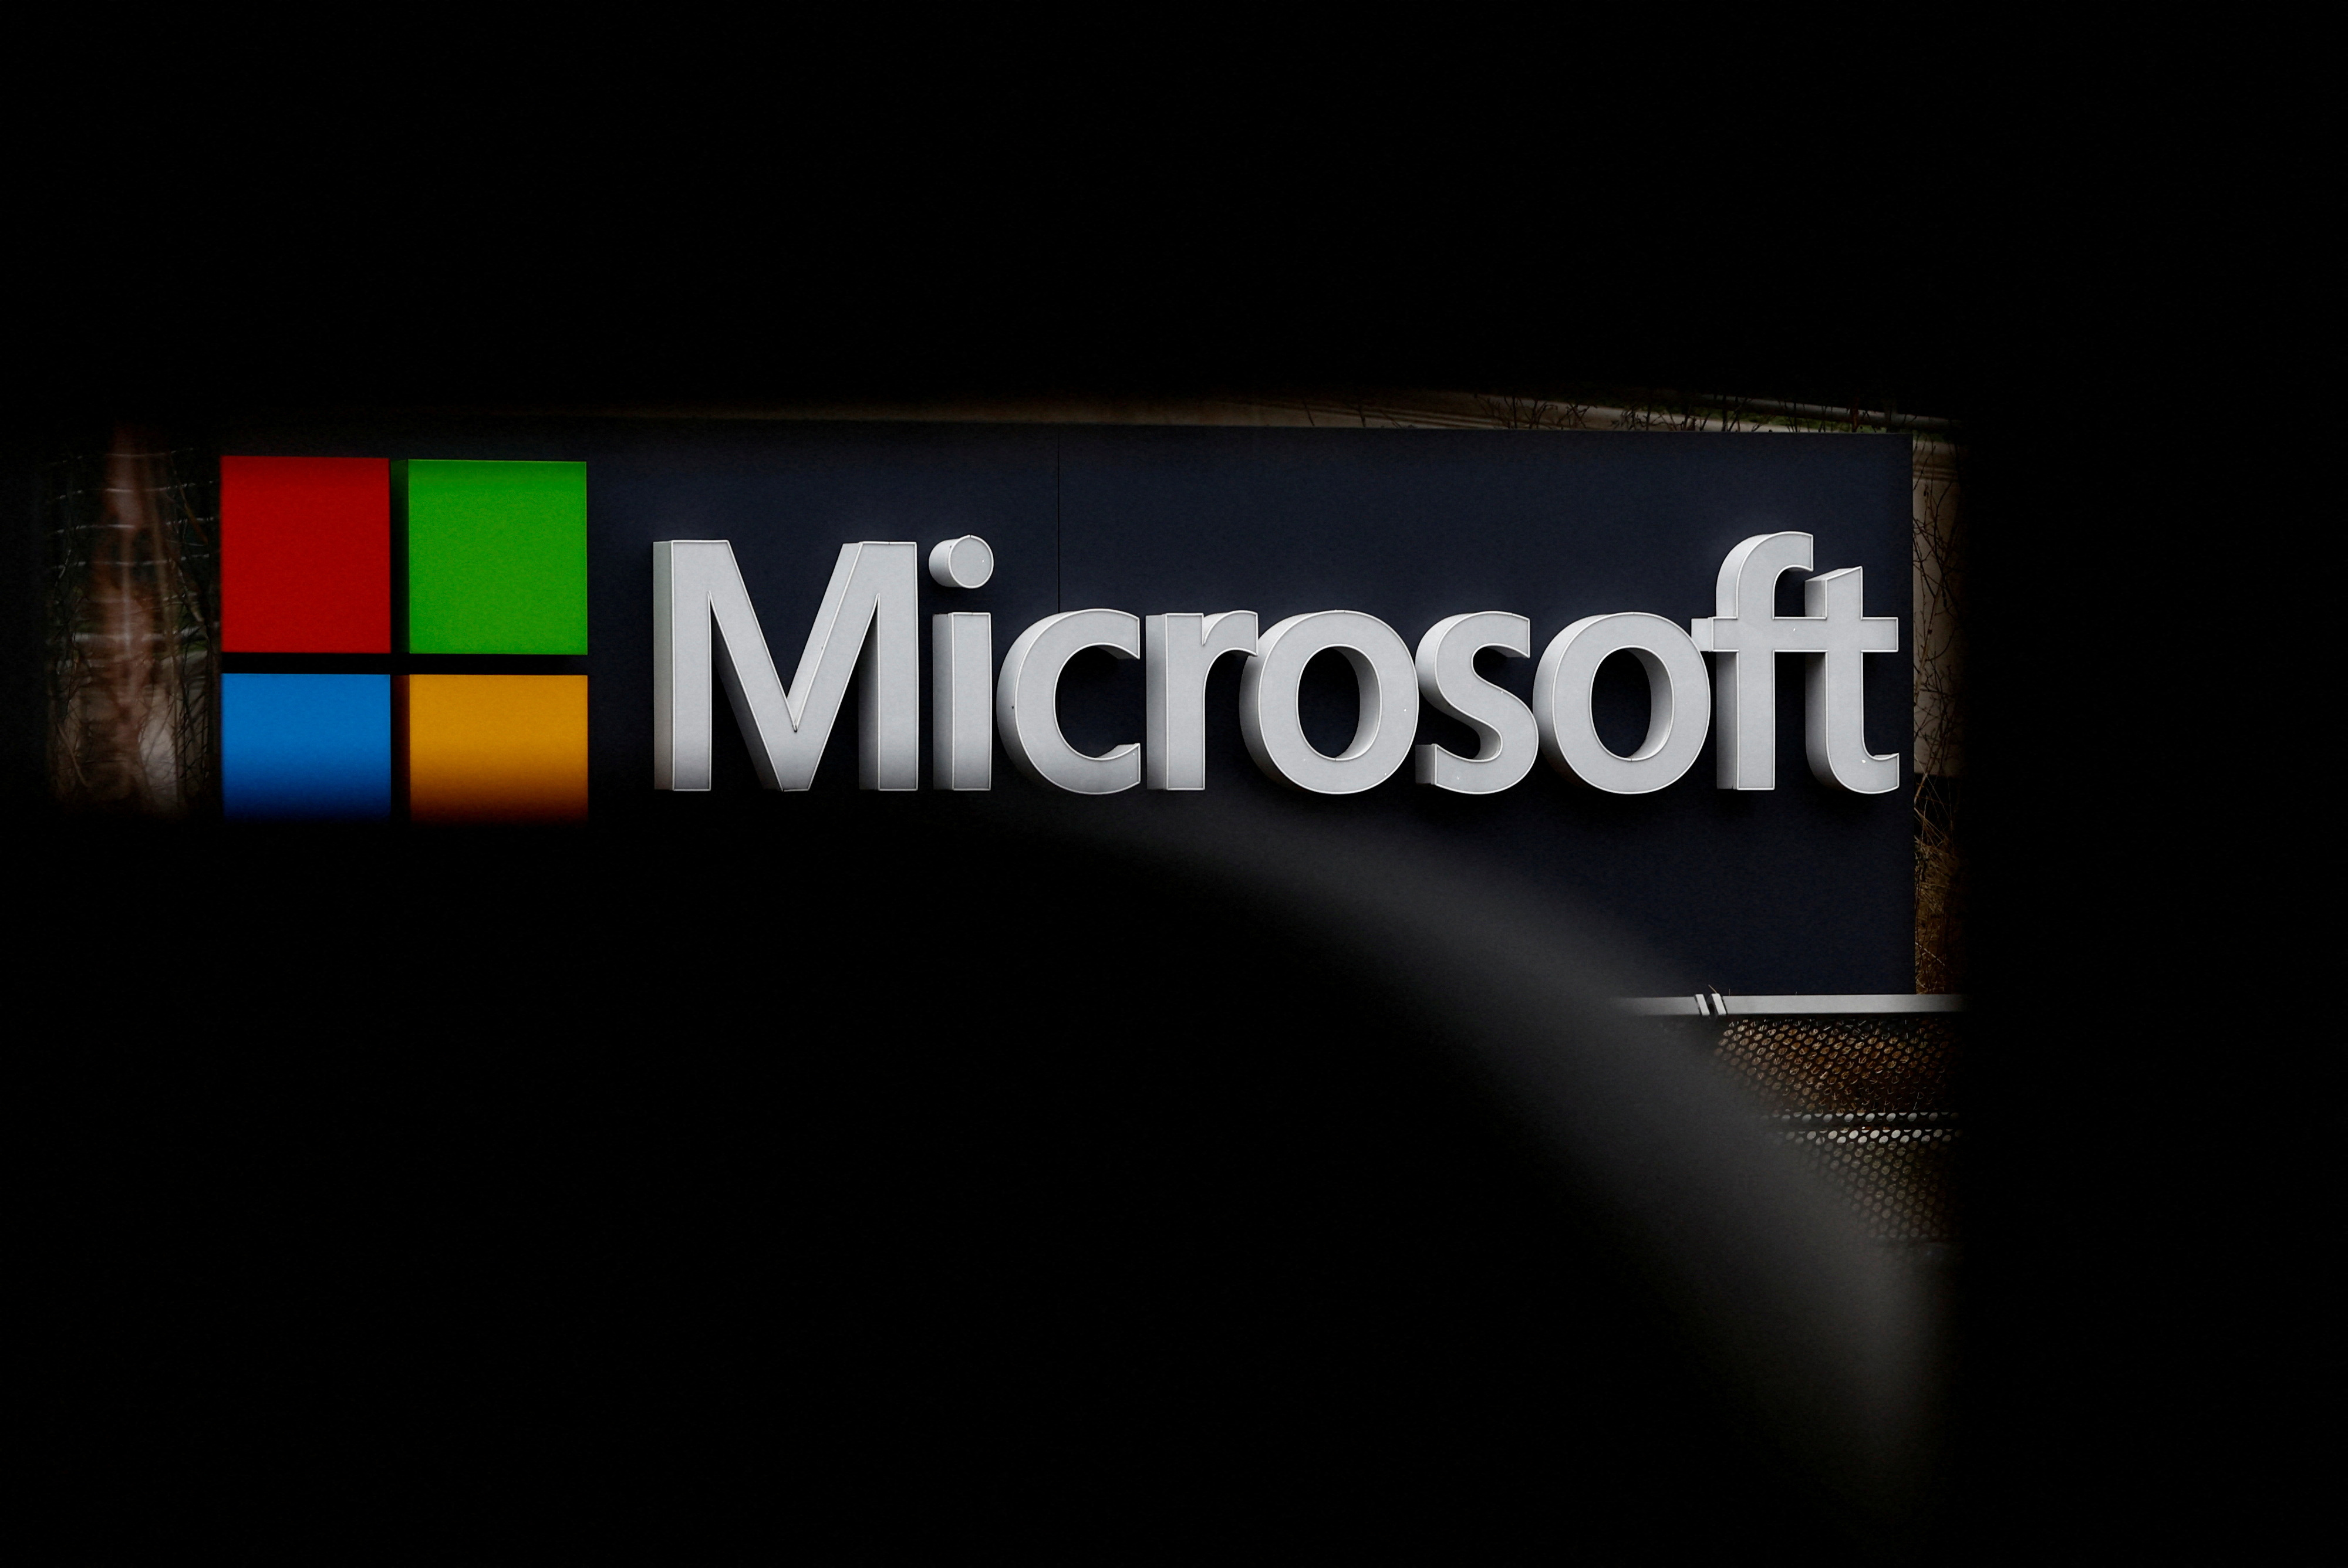 Un ingénieur de Microsoft saisit le régulateur : « Copilot n'est pas un modèle d'intelligence artificielle sûr »